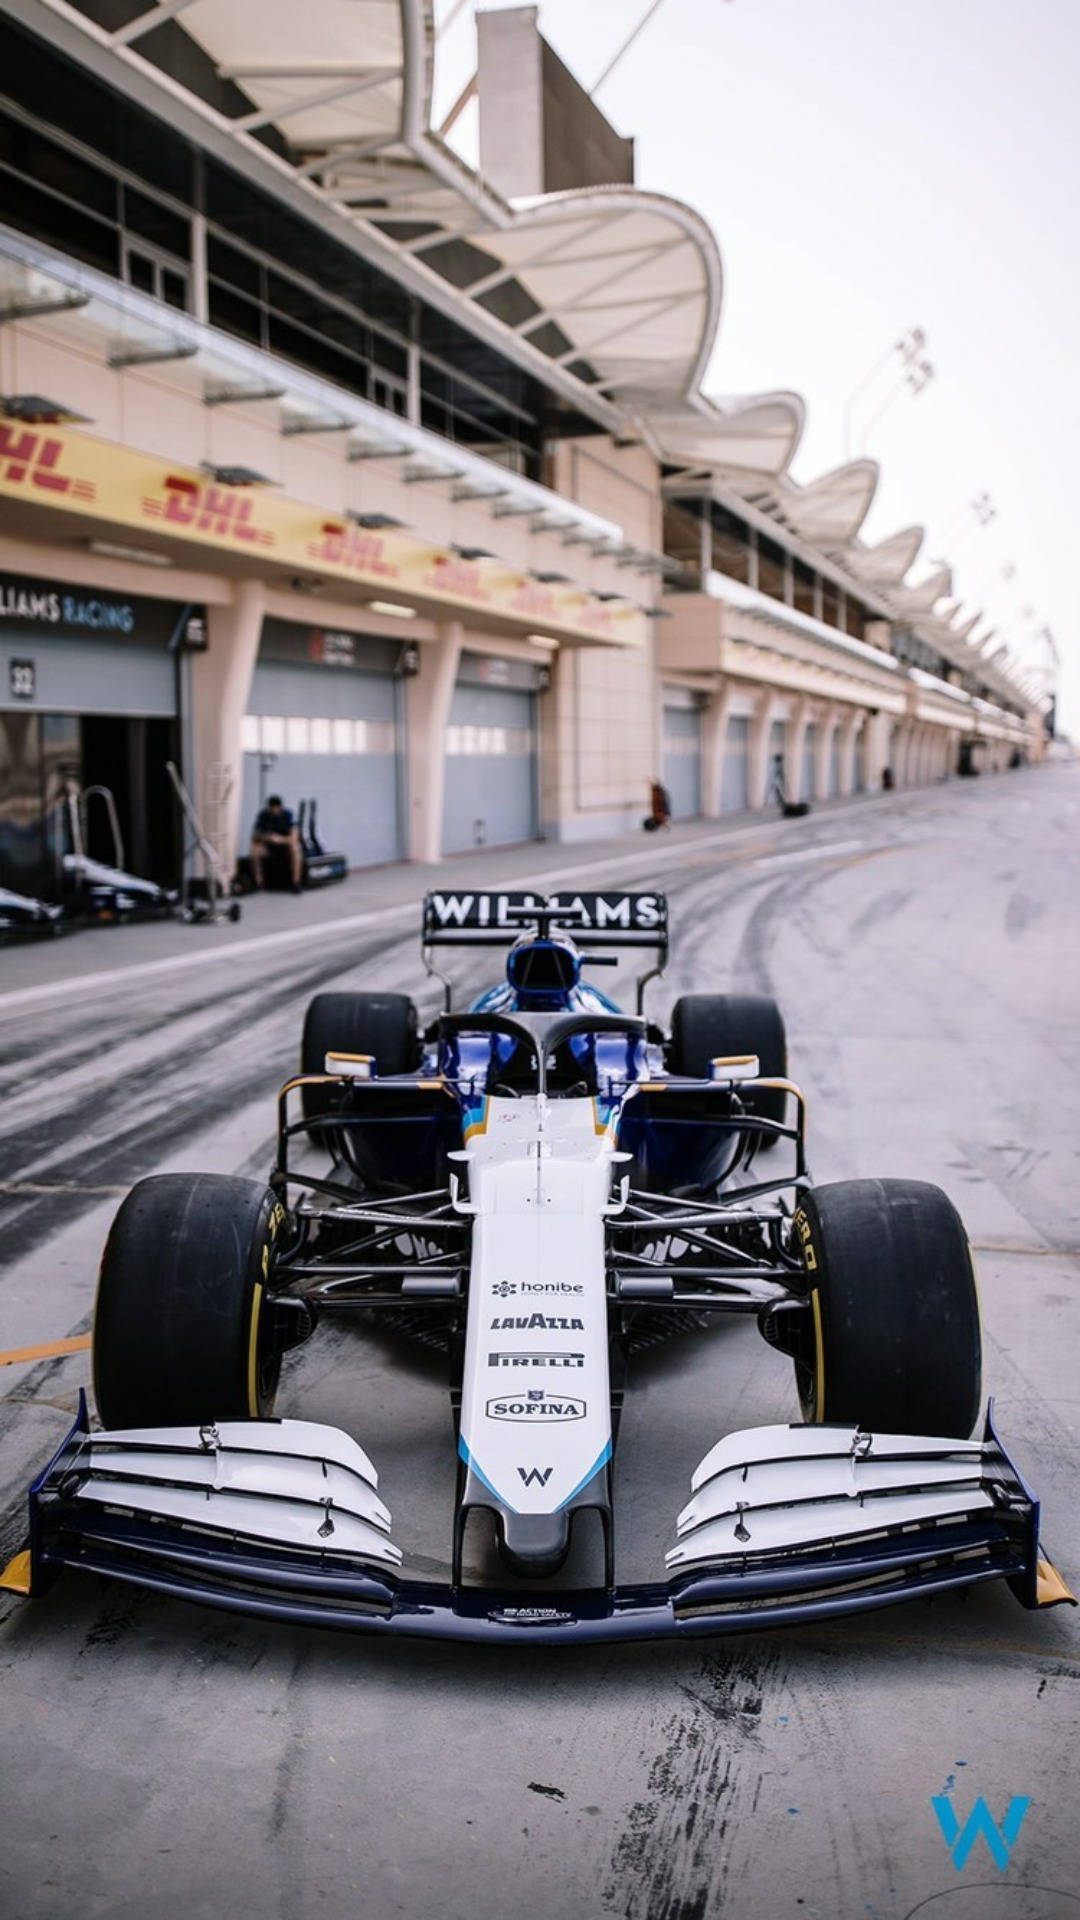 Williams Racing Car Wallpaper